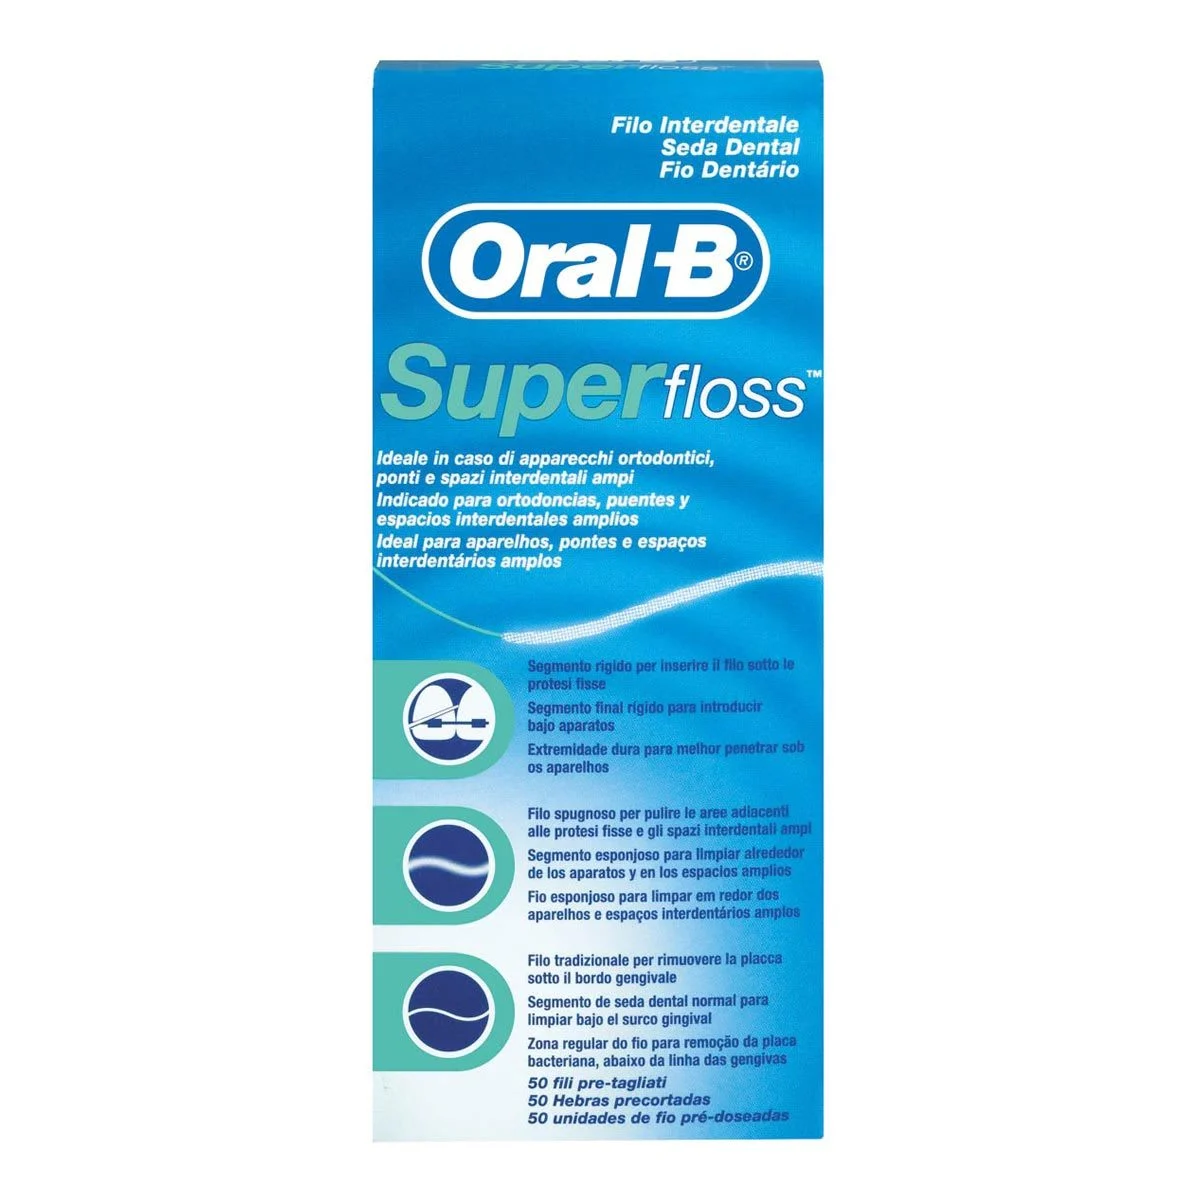  - Superfloss Oral-B 12 pacchetti x 50 pz